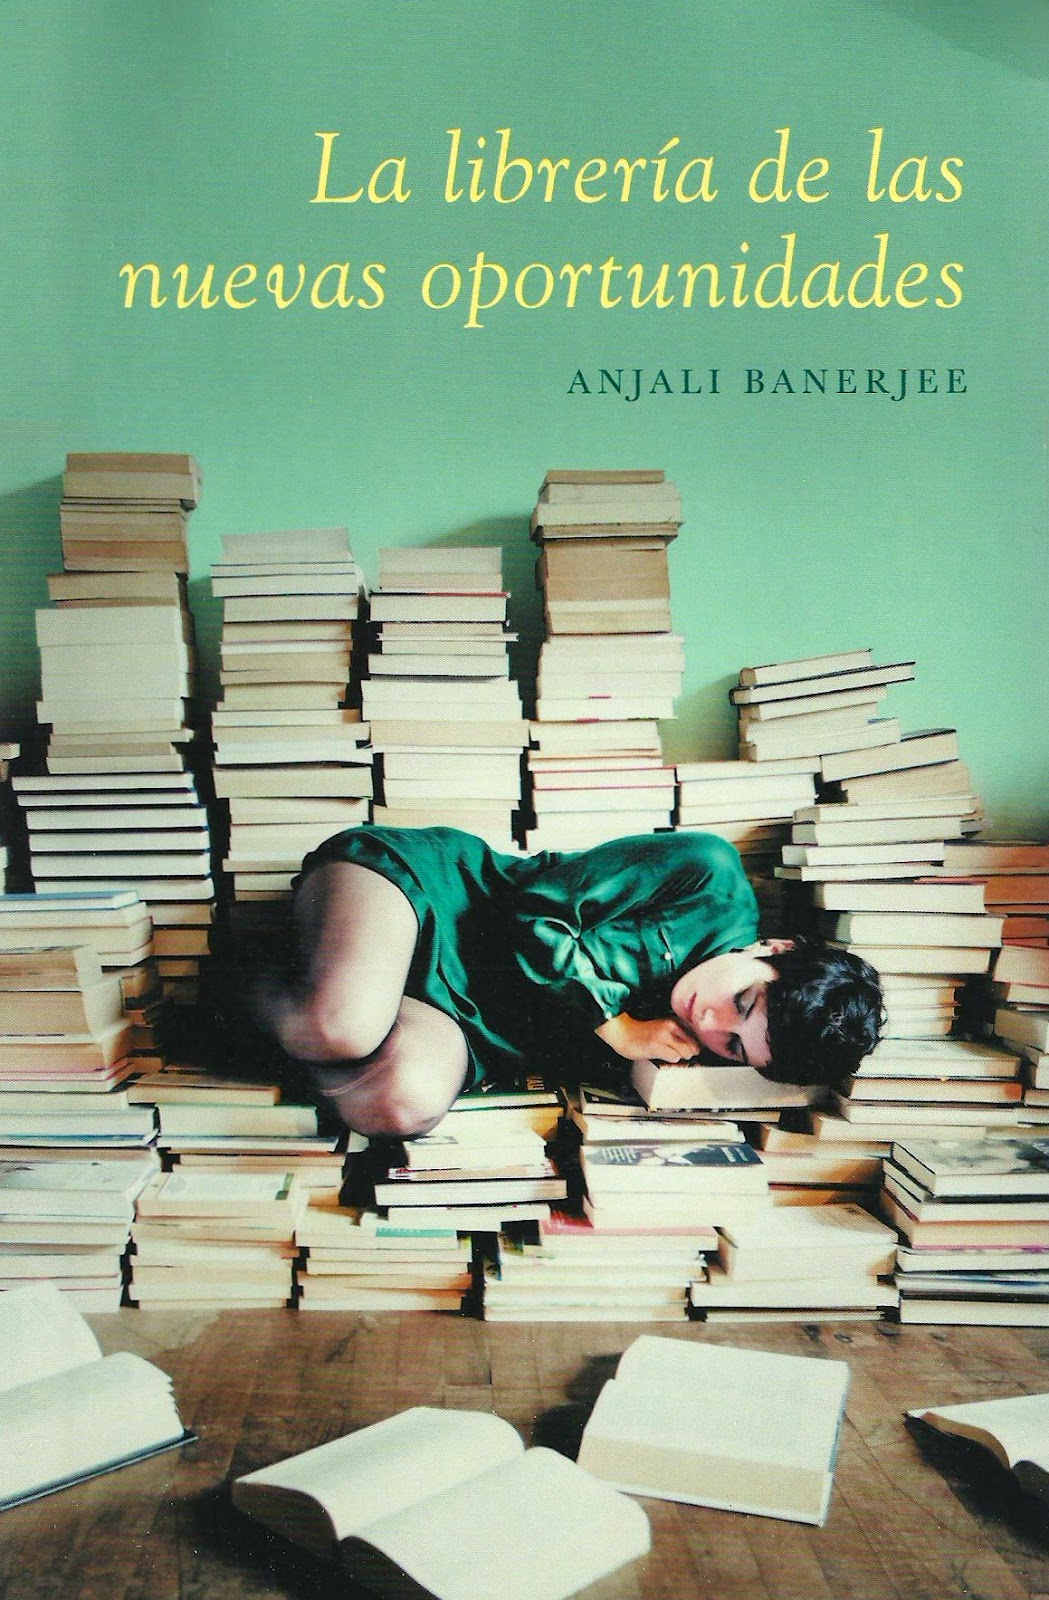 Libro "La librería de las nuevas oportunidades". Uno al mes